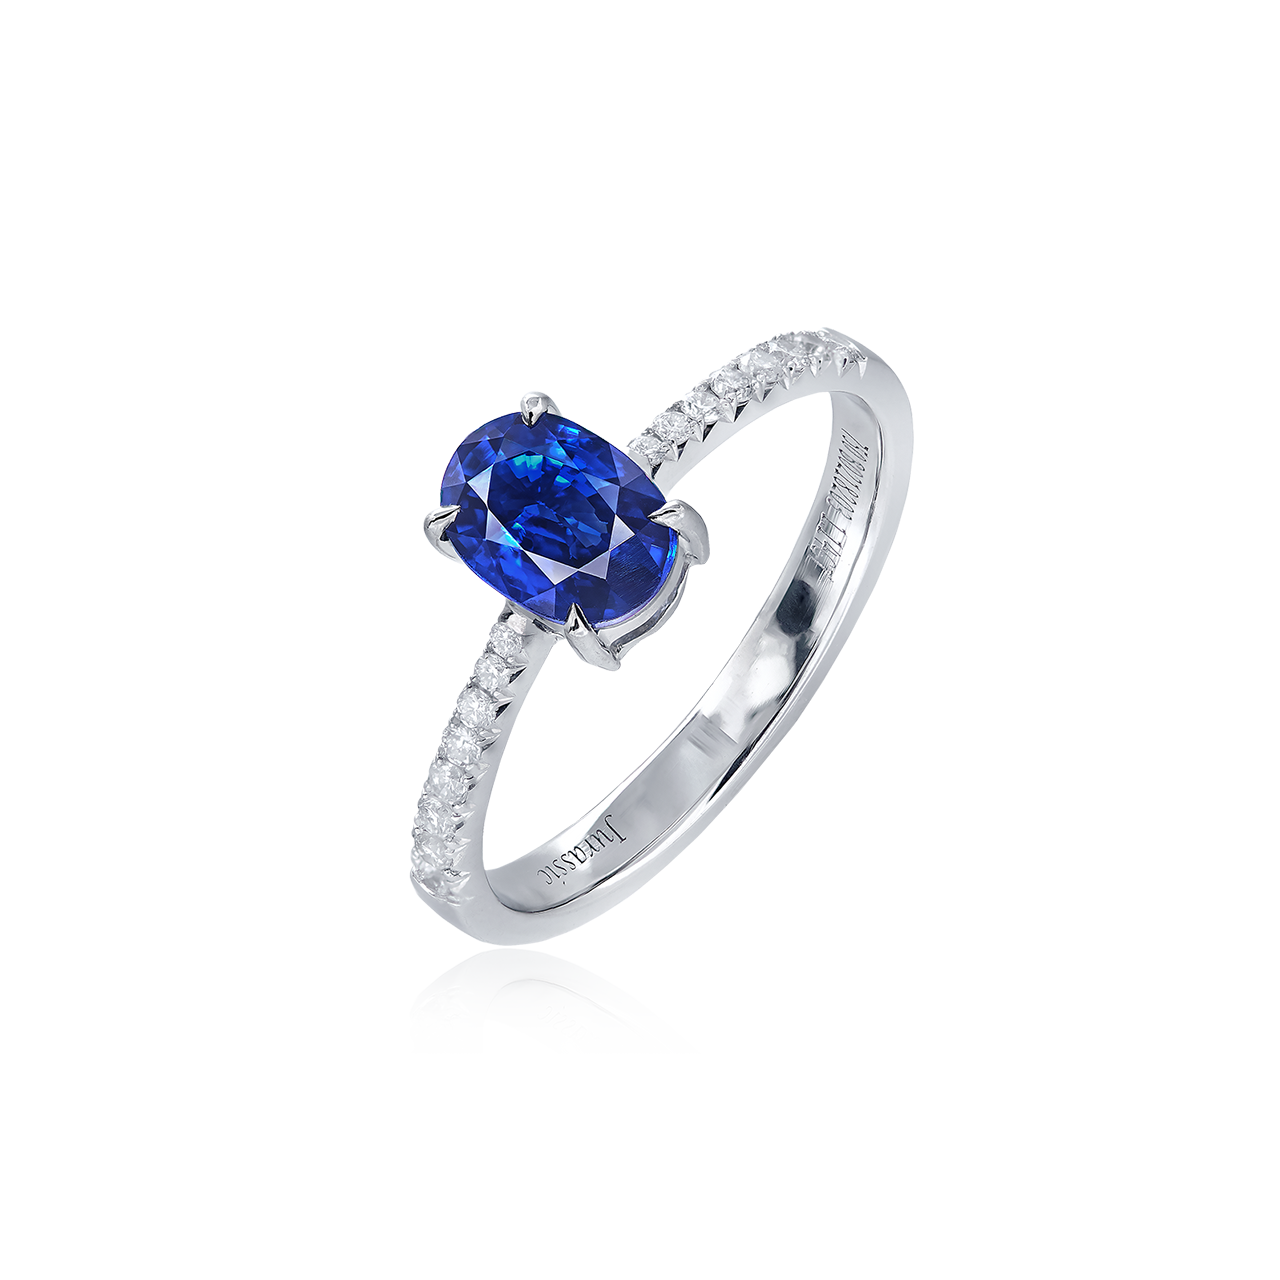 1.14克拉 天然藍寶石鑽戒
Blue Sapphire and Diamond Ring